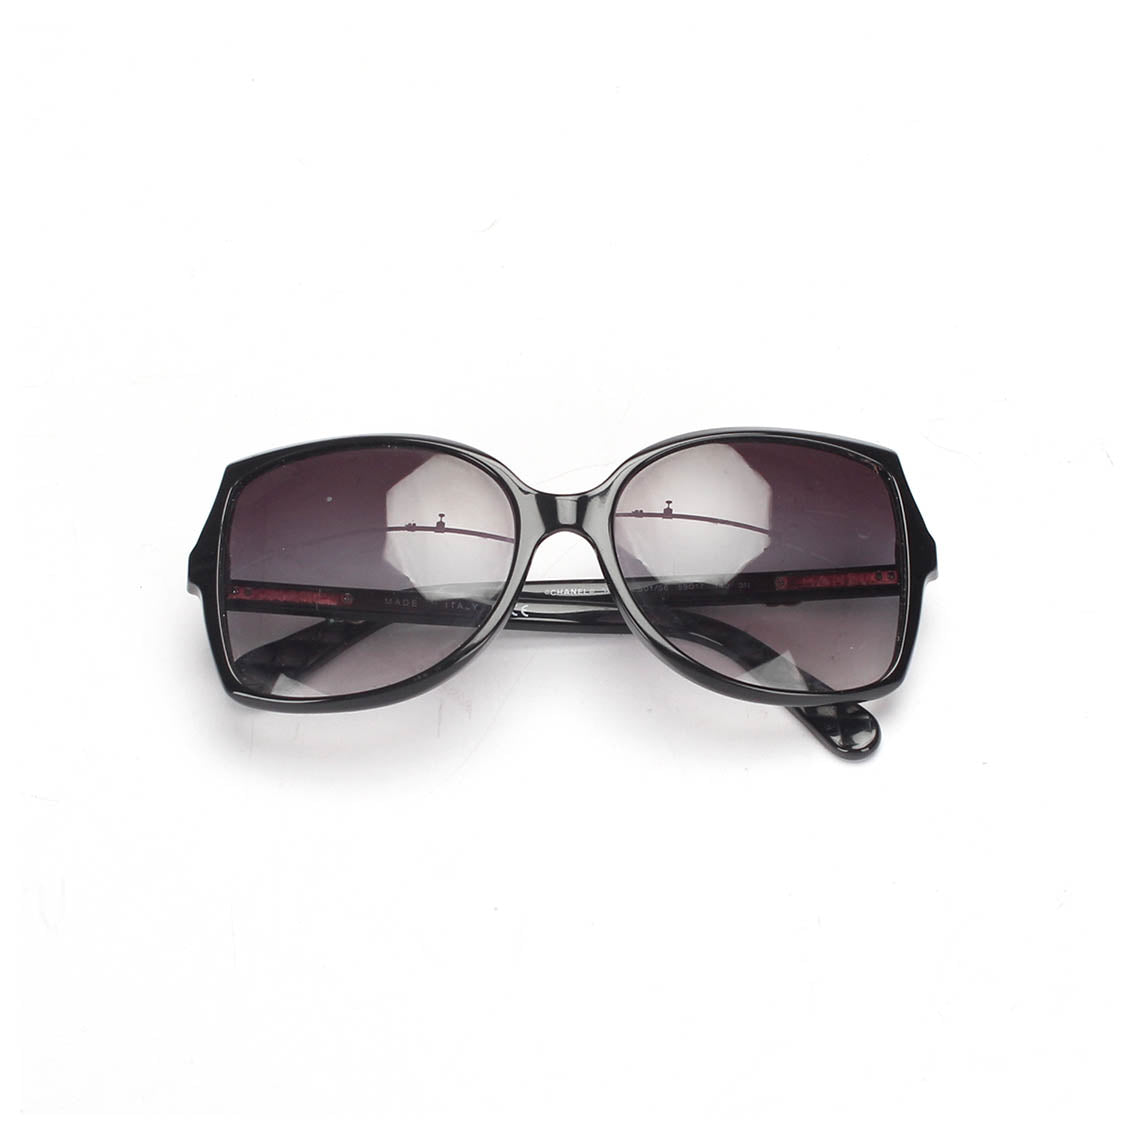 CC Square Tinted Sunglasses 5245